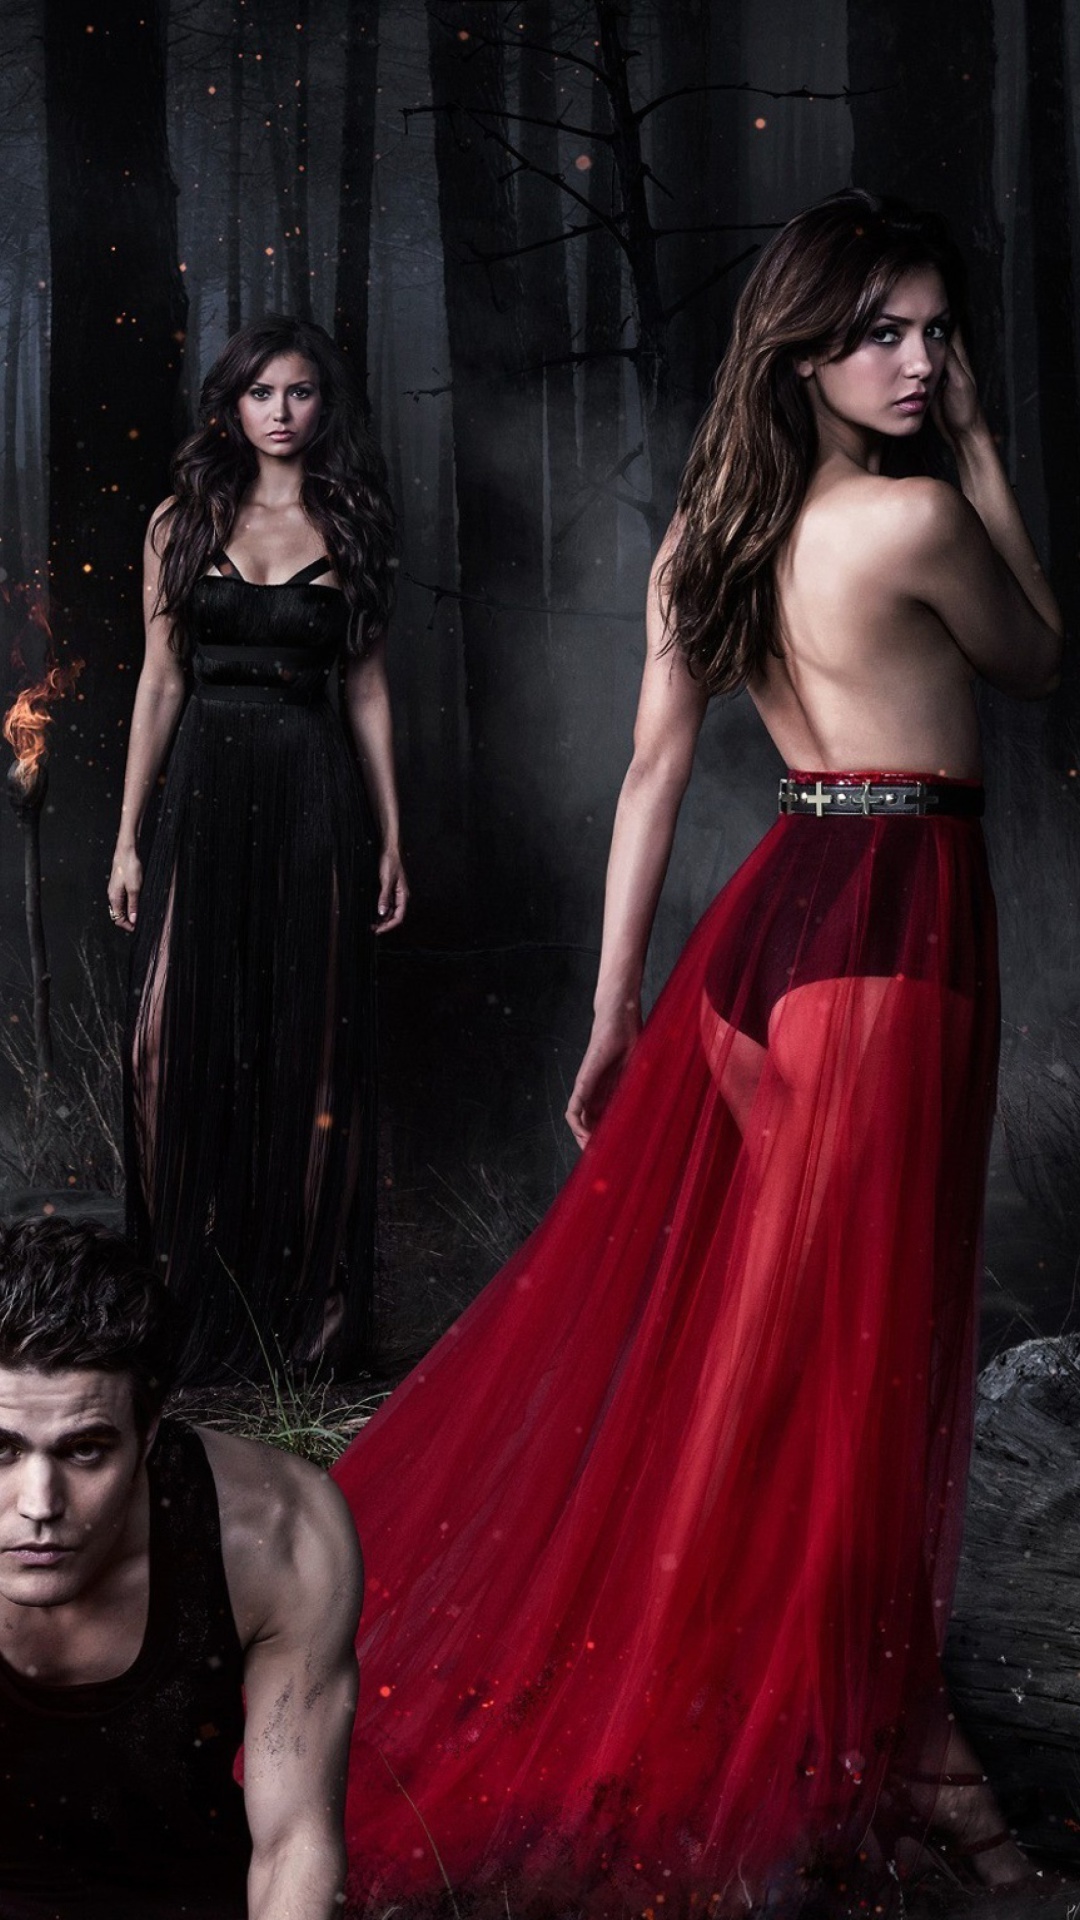 The Vampire Diaries with Nina Dobrev wallpaper 1080x1920